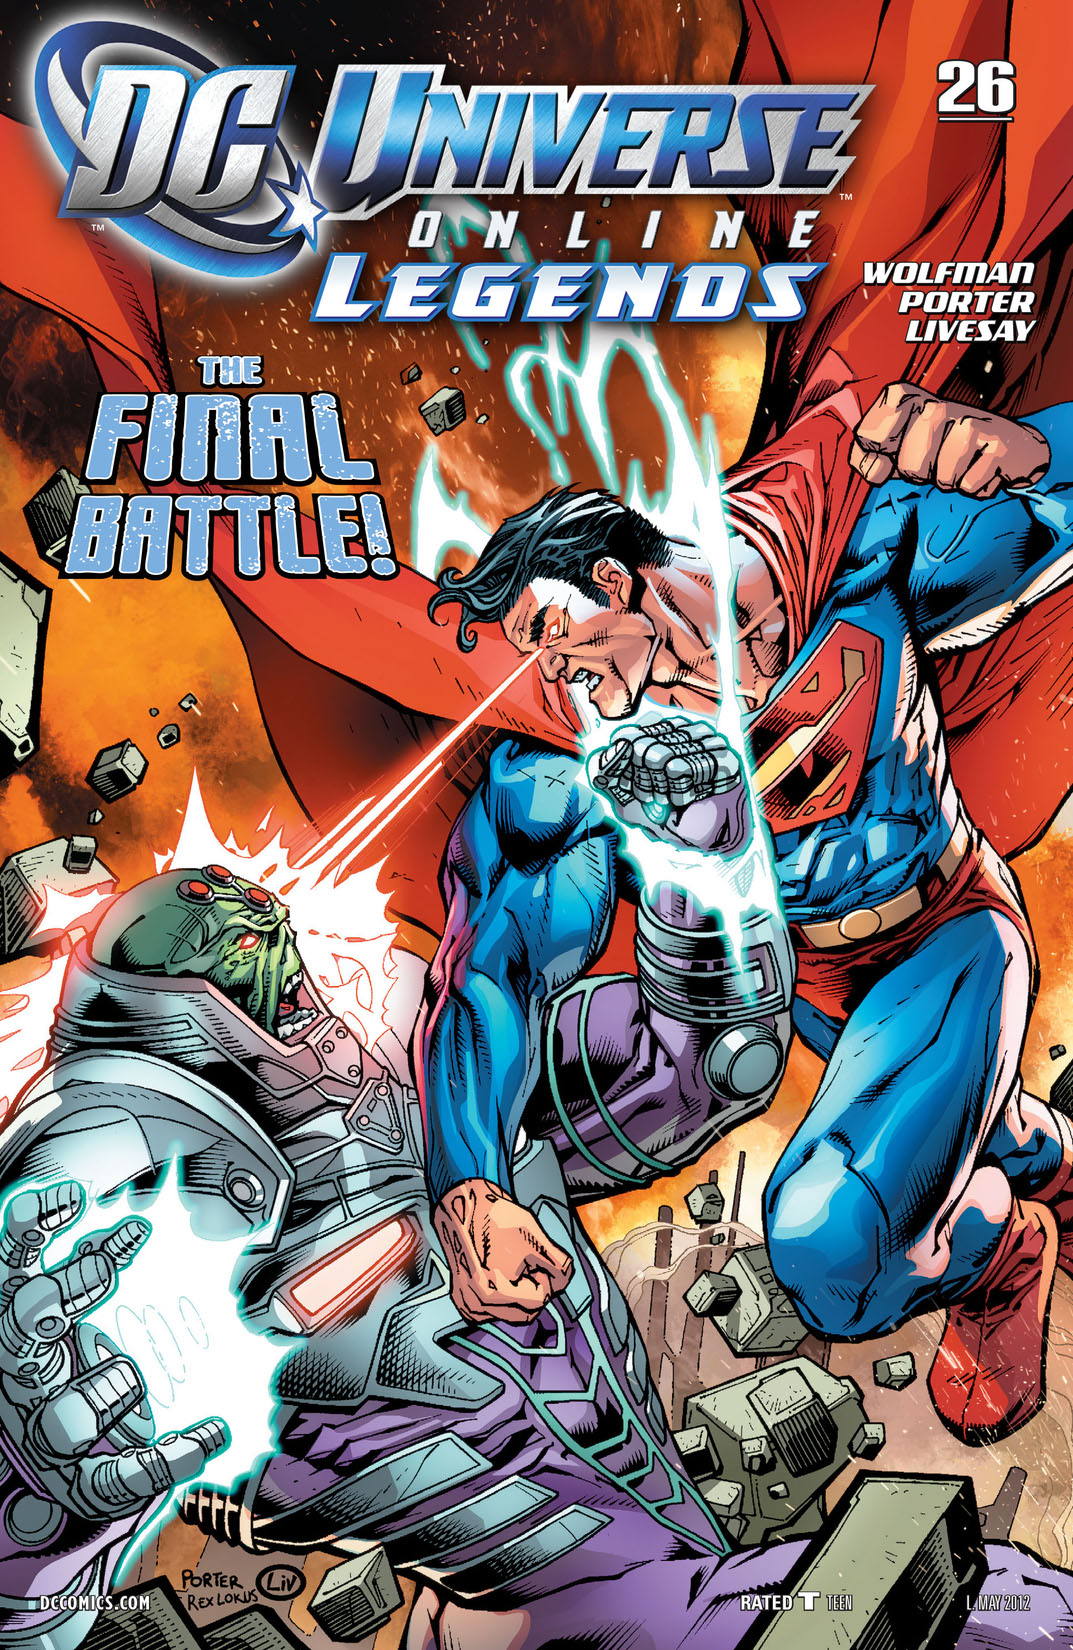 DC Universe Online Legends #26 preview images